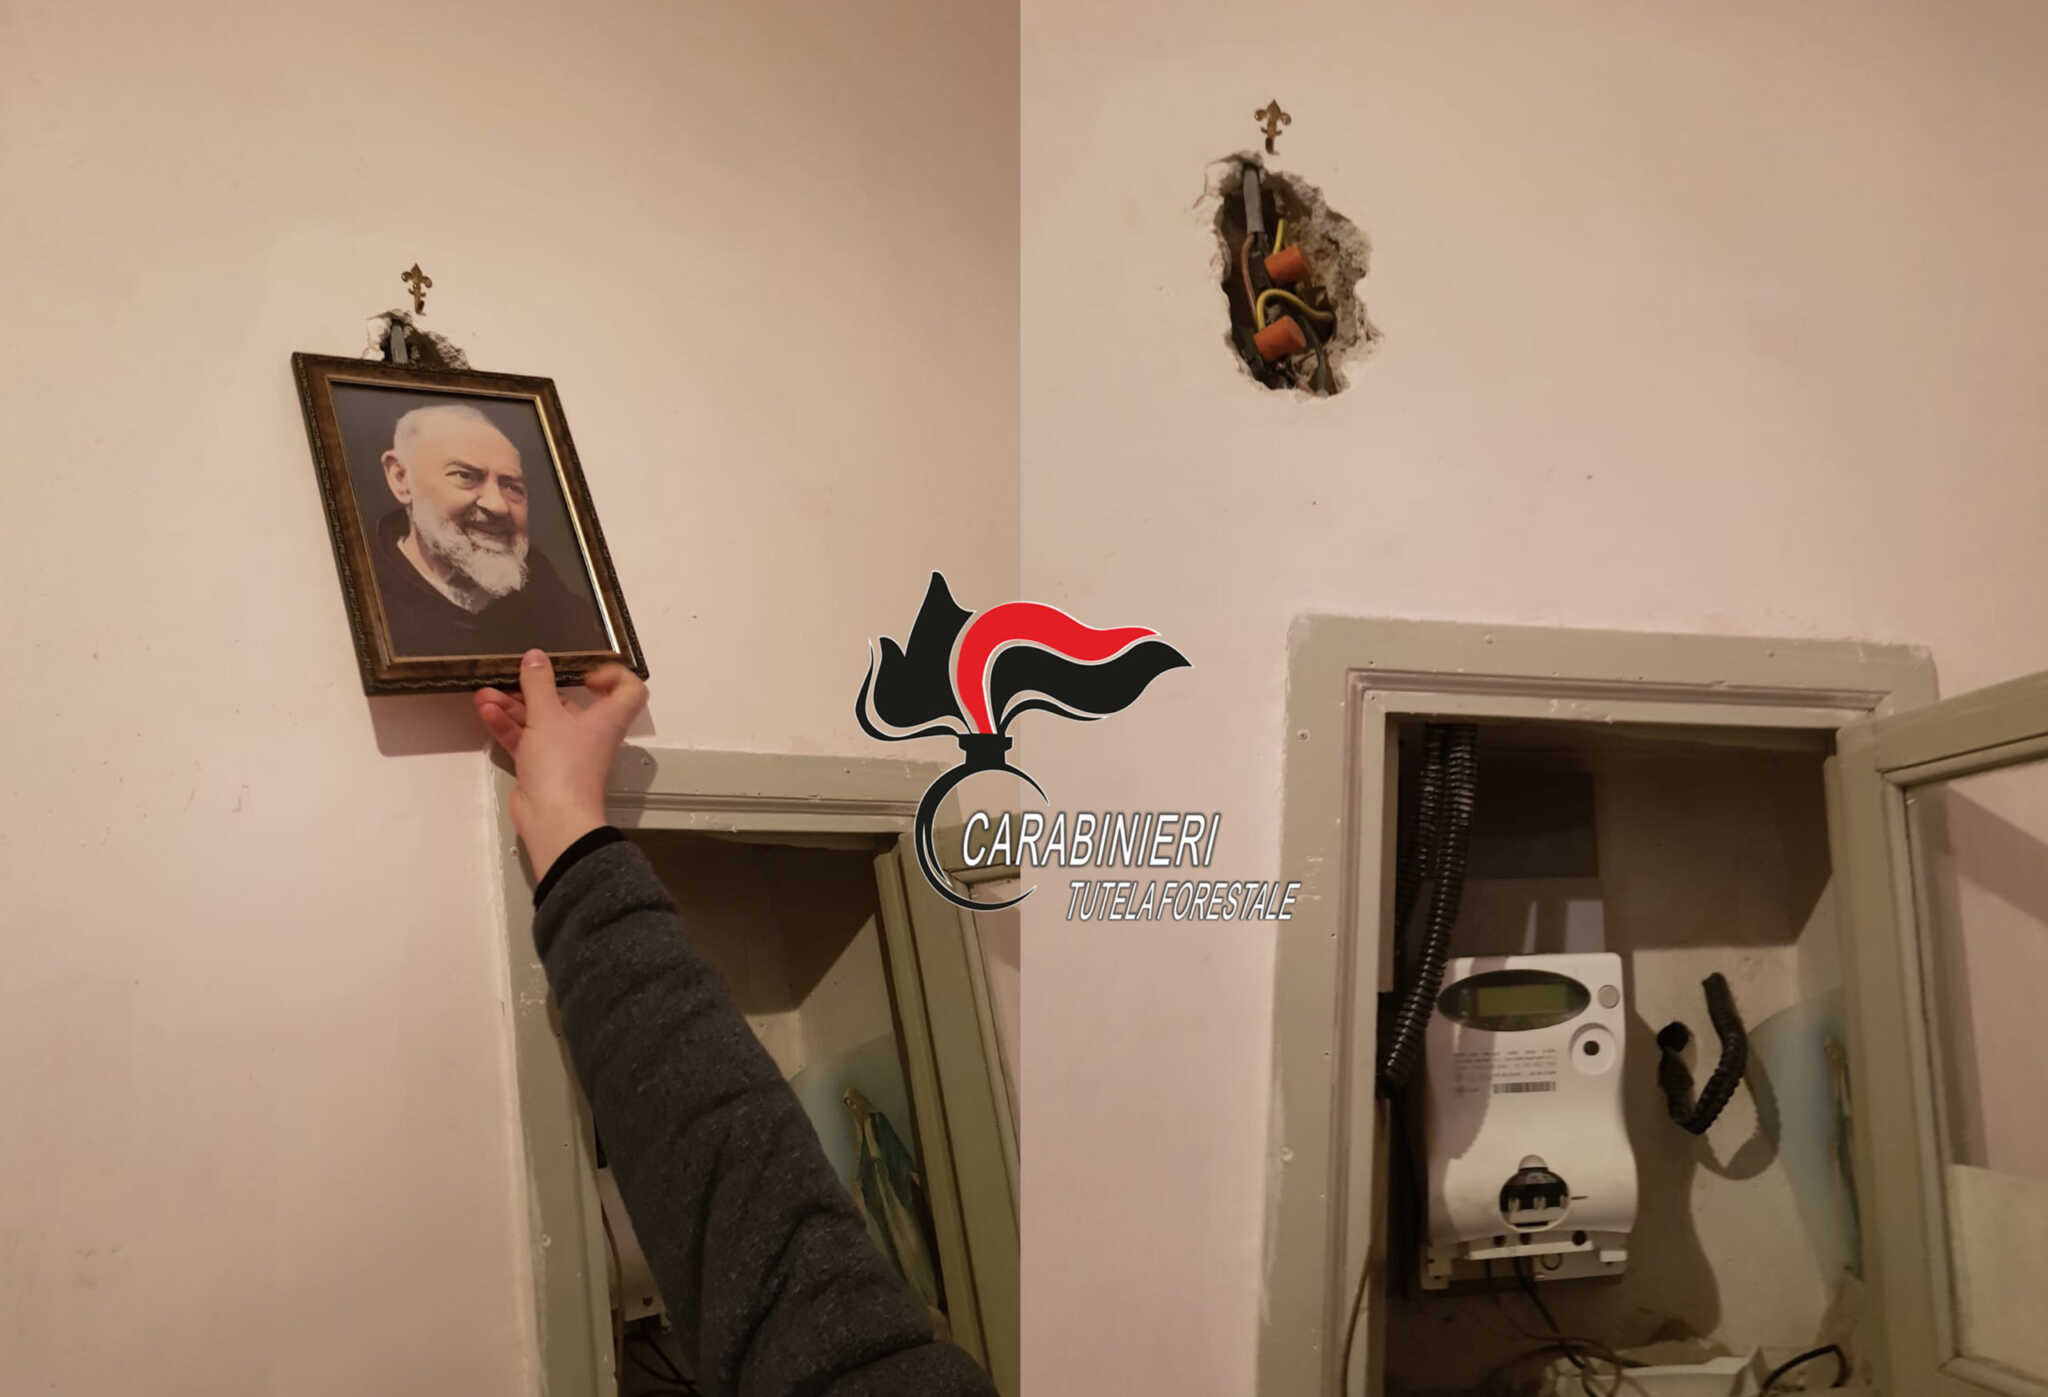 San Gennaro Vesuviano, alimenta la sua attività con energia elettrica rubata e nasconde l’allaccio abusivo dietro un quadro di Padre Pio. 33enne arrestato dai carabinieri